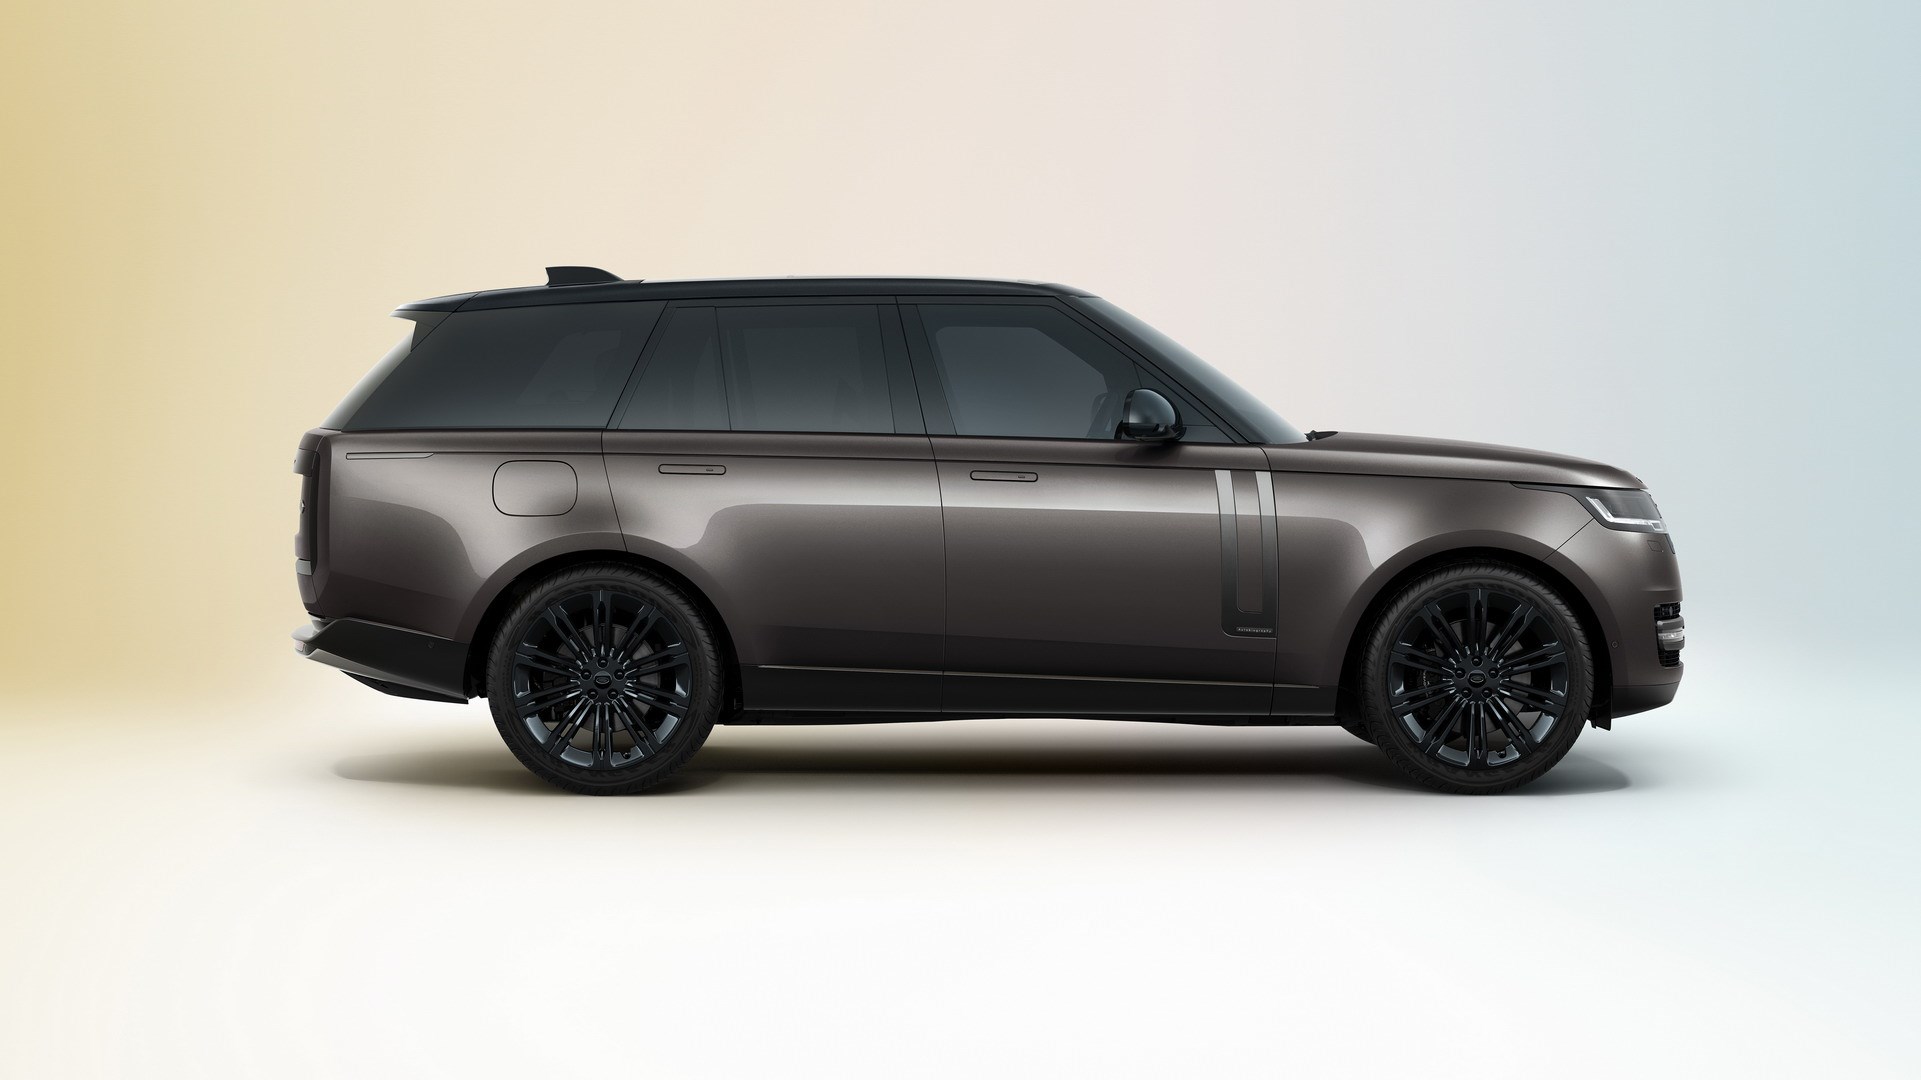 Yeni 2022 Range Rover tanıtıldı: İşte tasarımı ve özelikleri